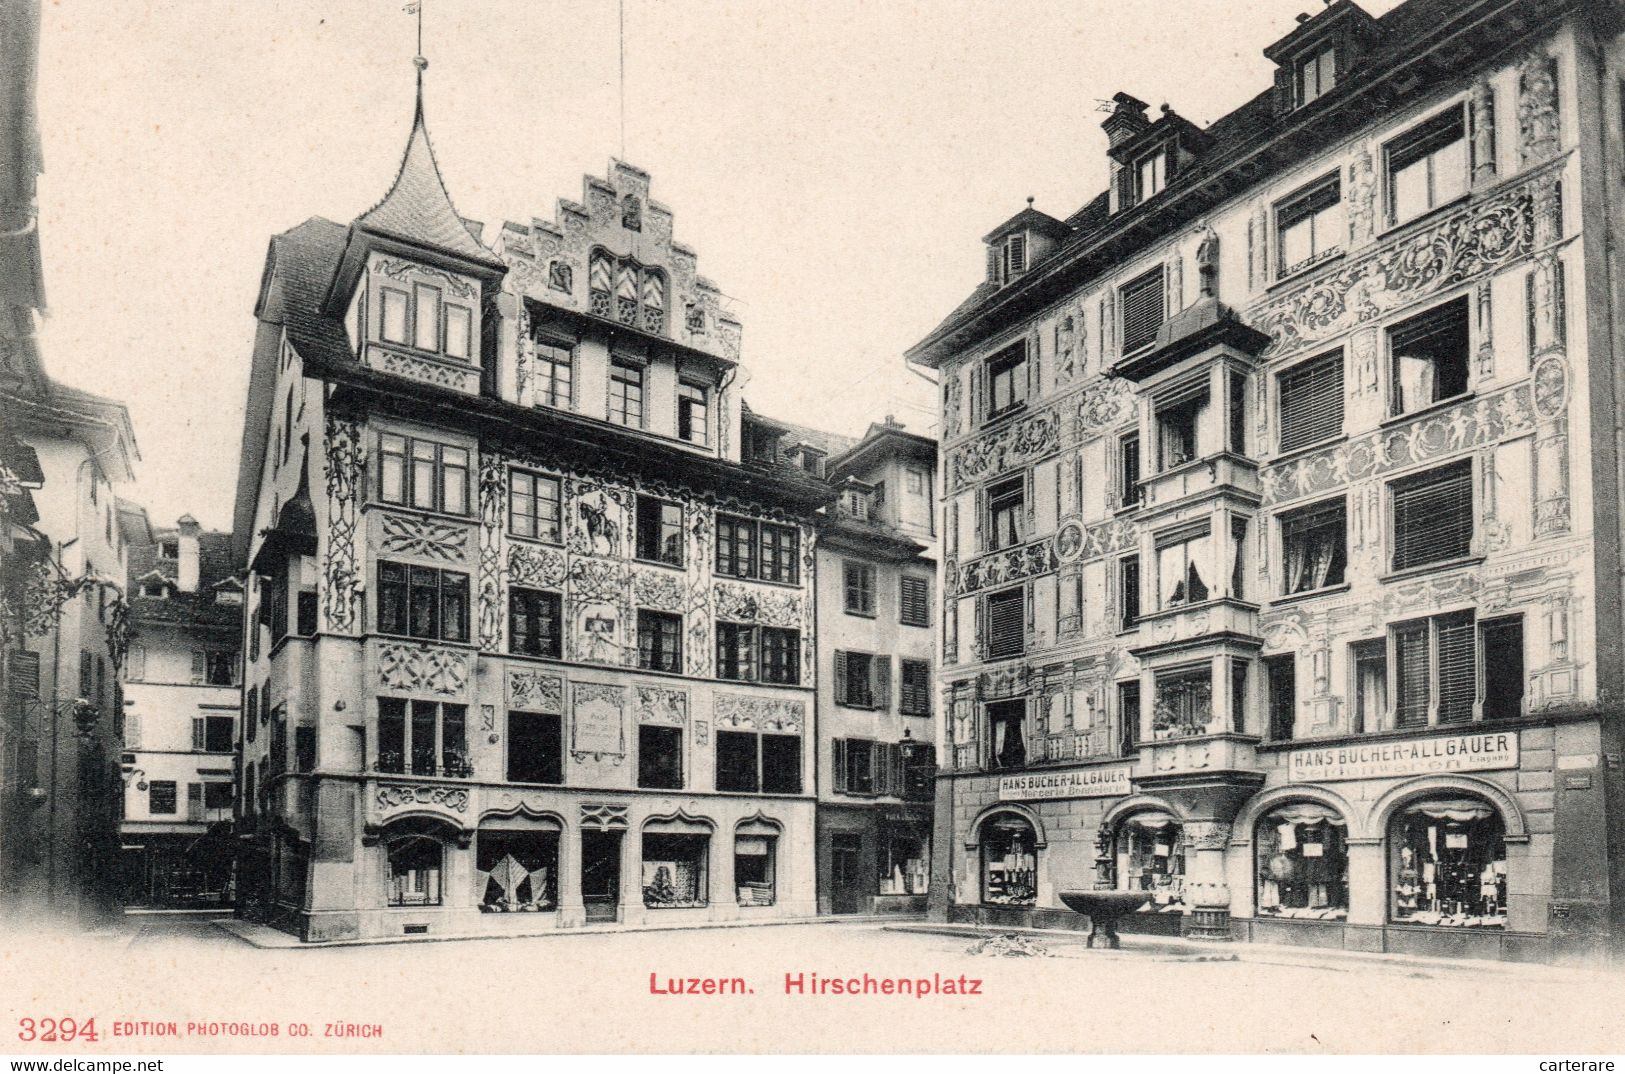 SUISSE,SWITZERLAND,SVIZZERA,SCHWEIZ,HELVETIA,SWISS,LUZERN,LUCERNE,1900 - Luzern